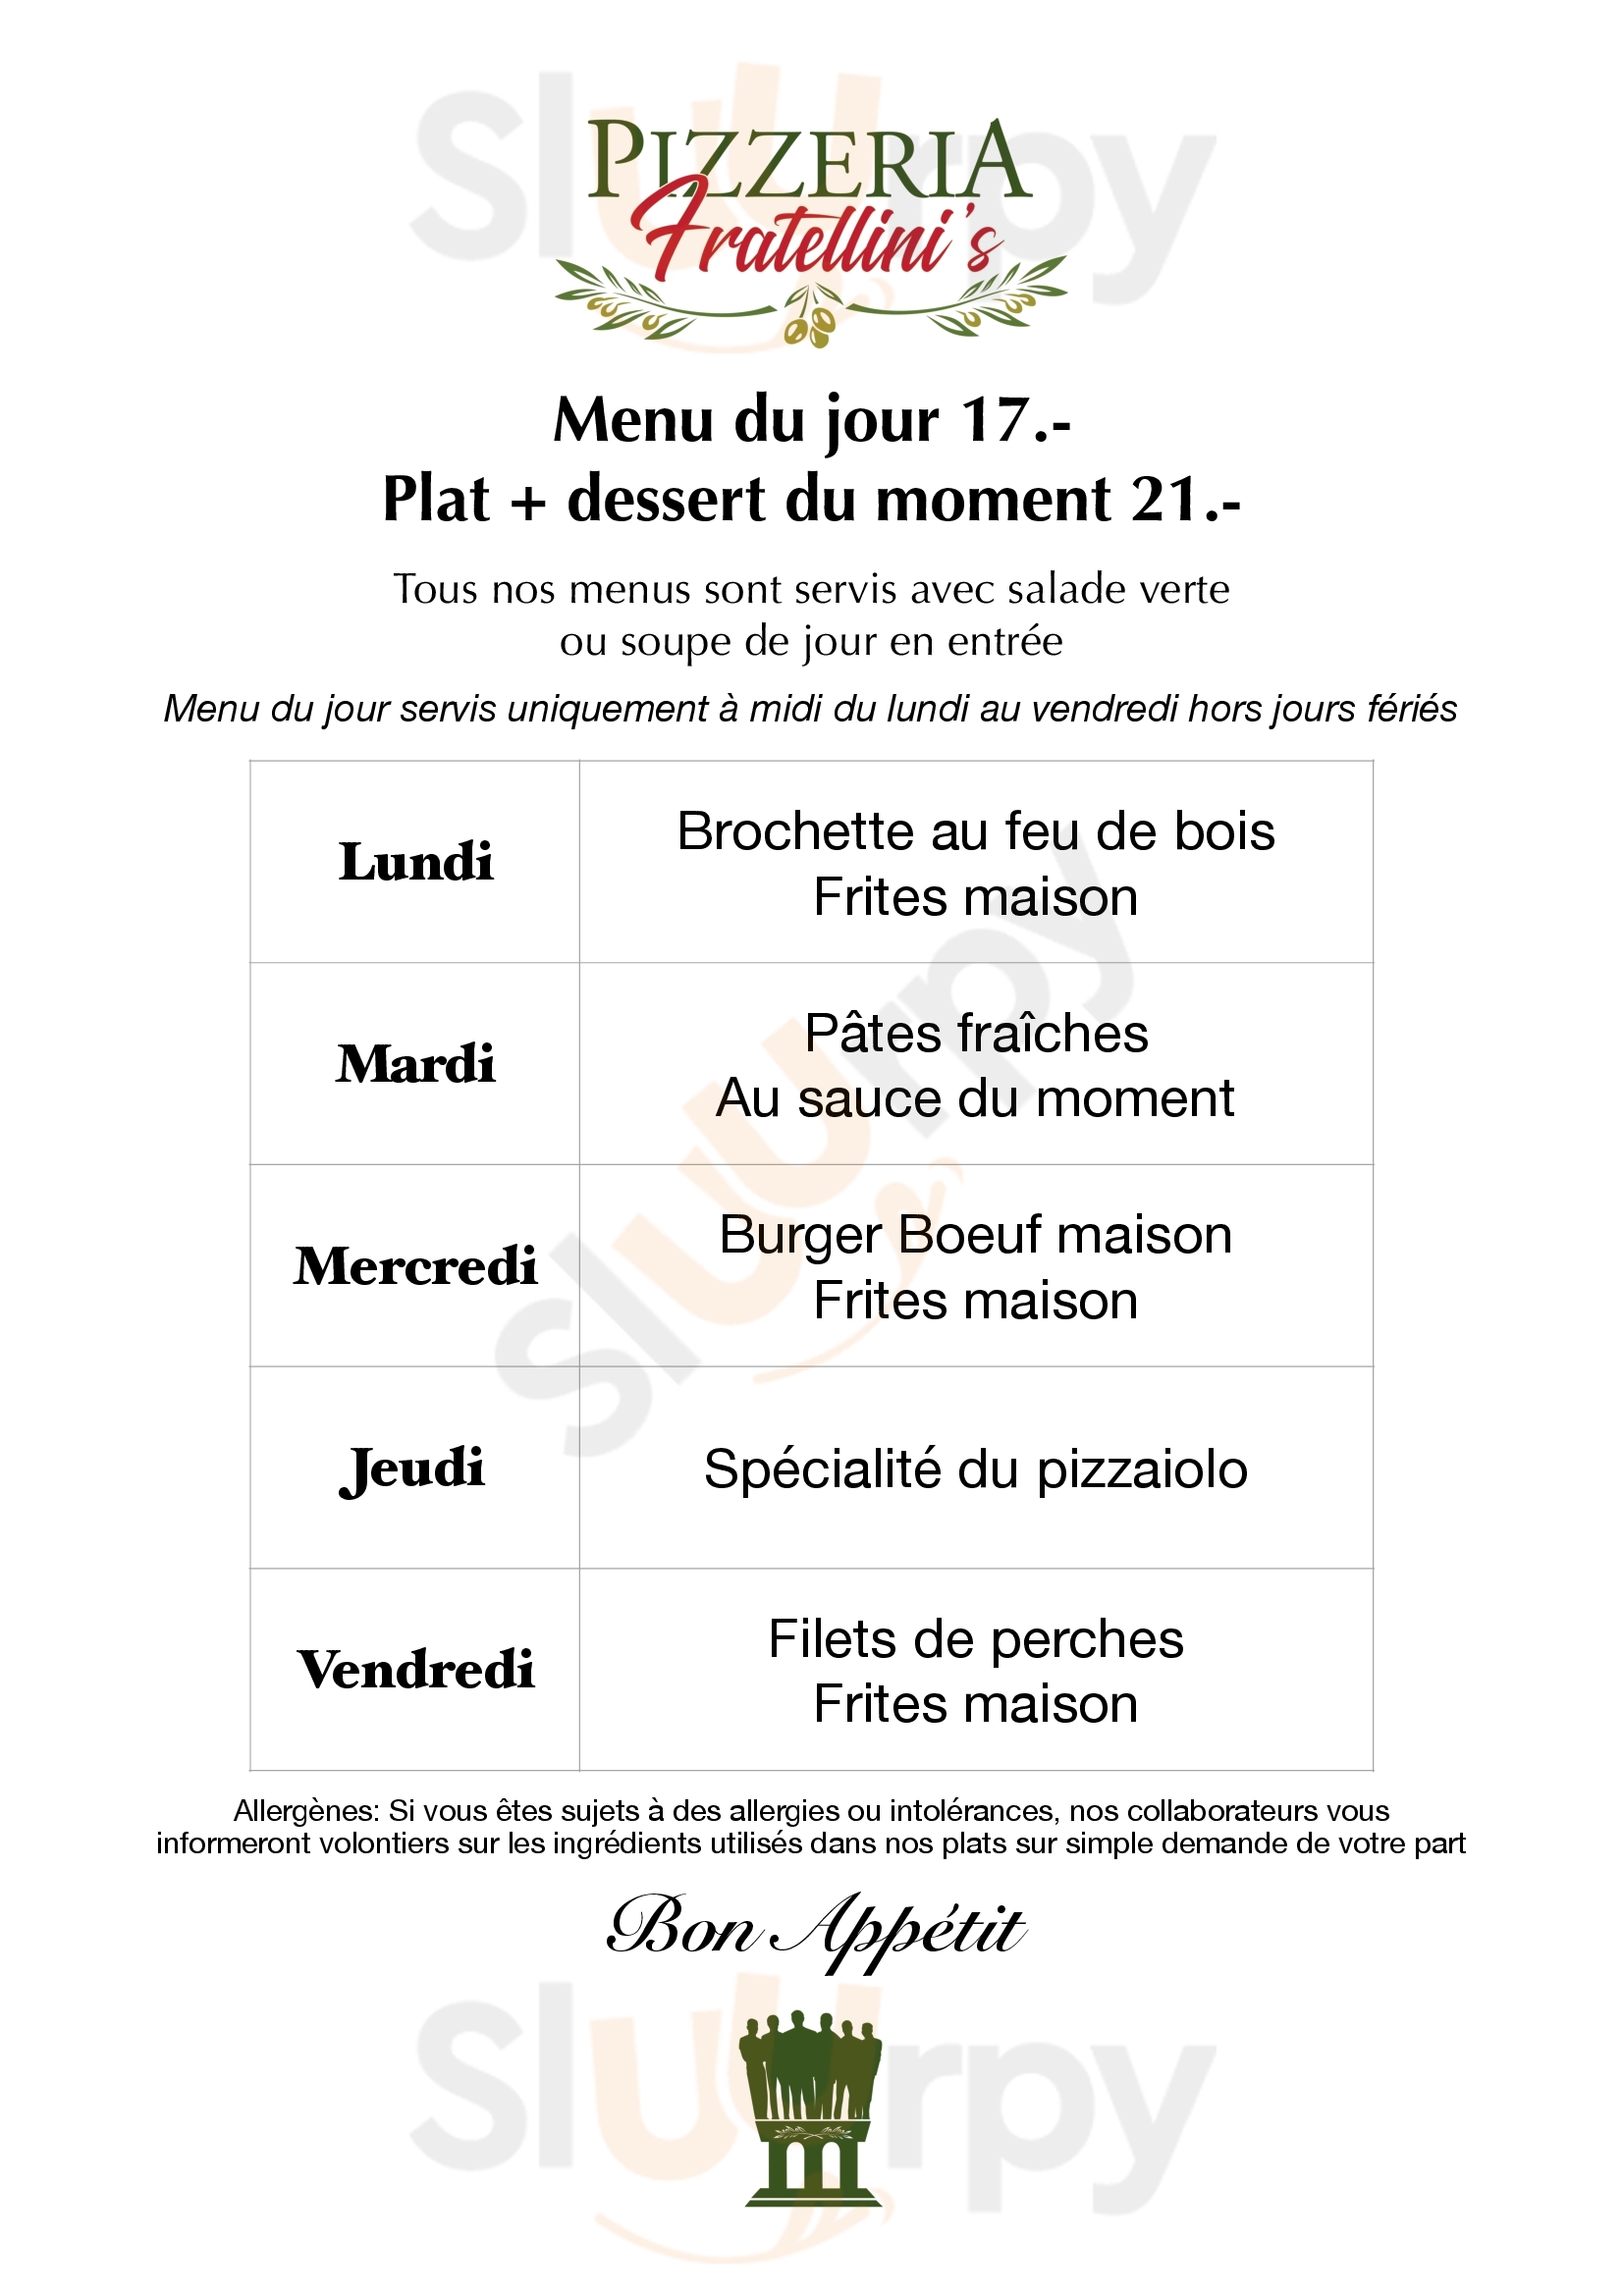 Pizzeria Fratellini's La Chaux-de-Fonds Menu - 1